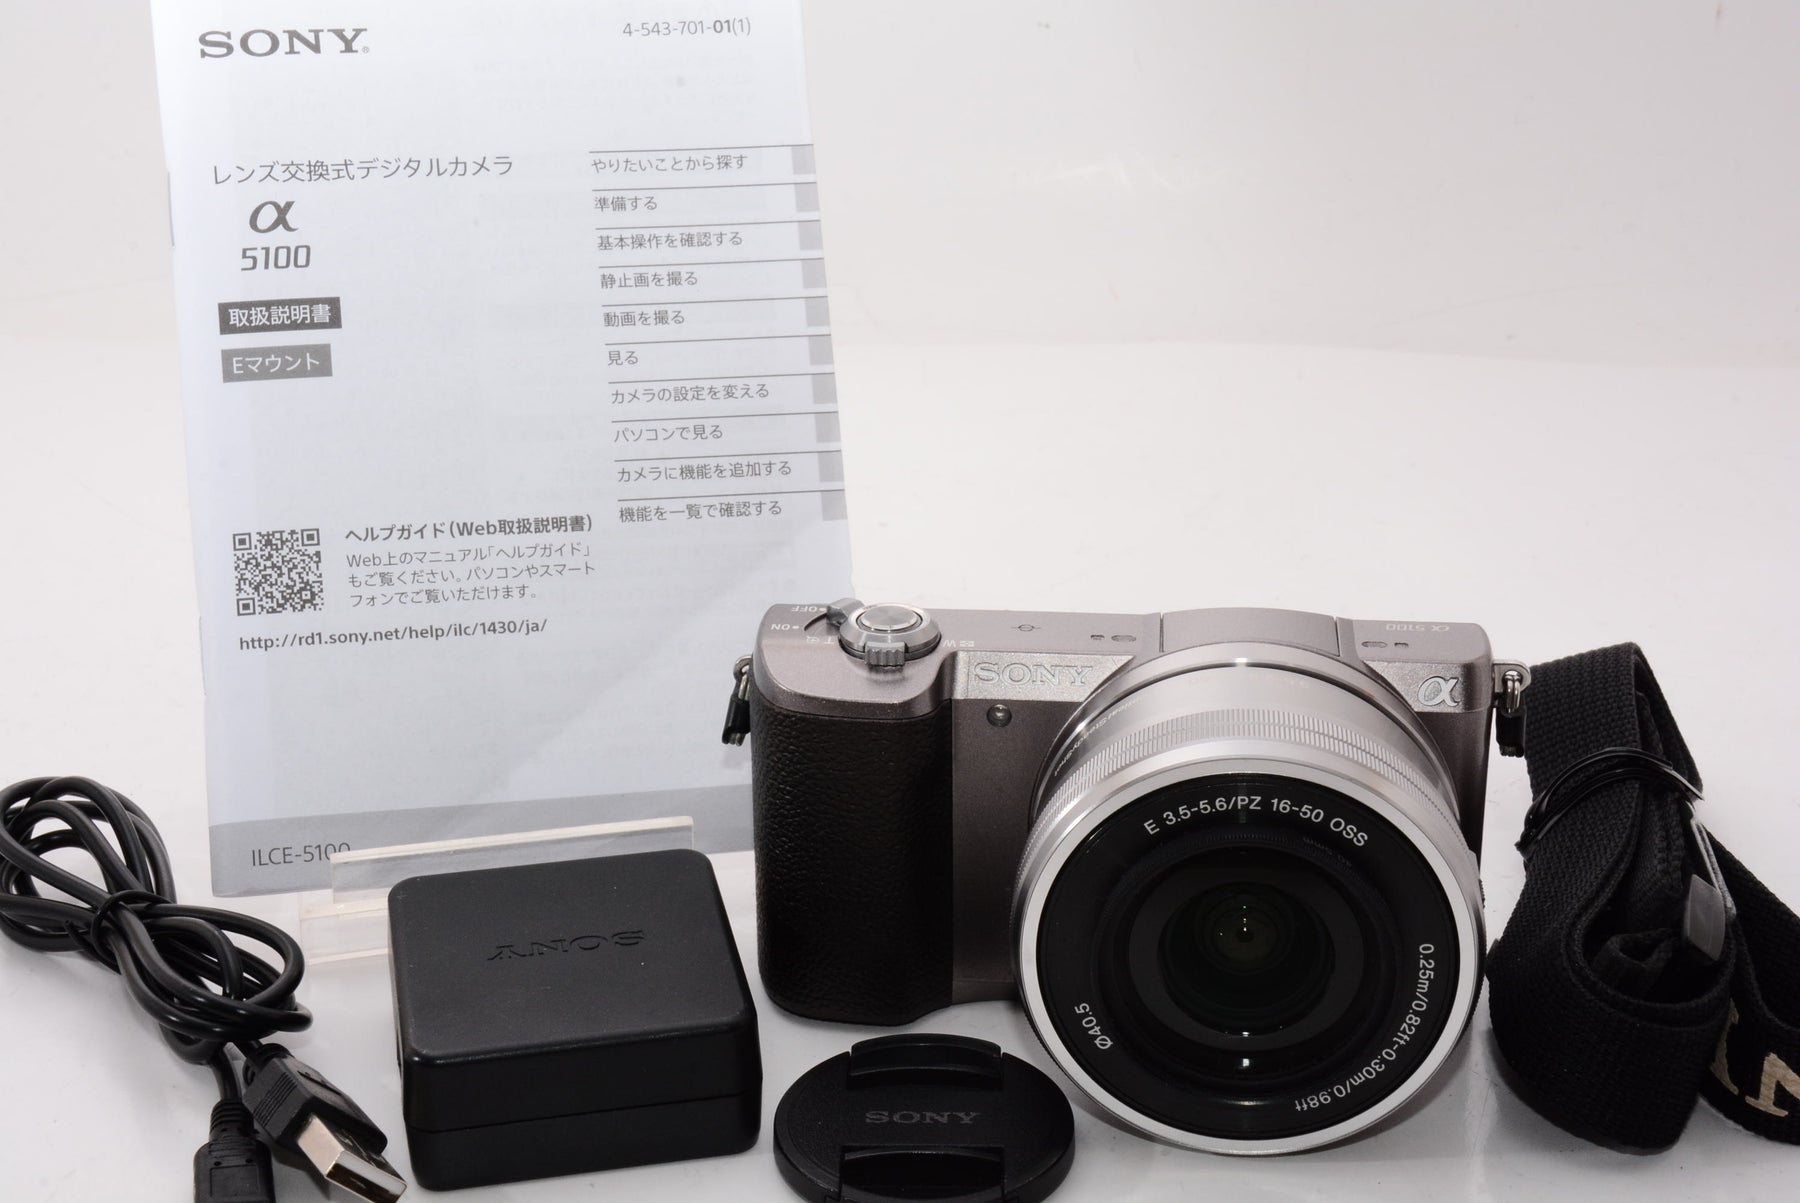 SONY ソニー α5100 パワーズームレンズキット ILCE-5100 - デジタルカメラ